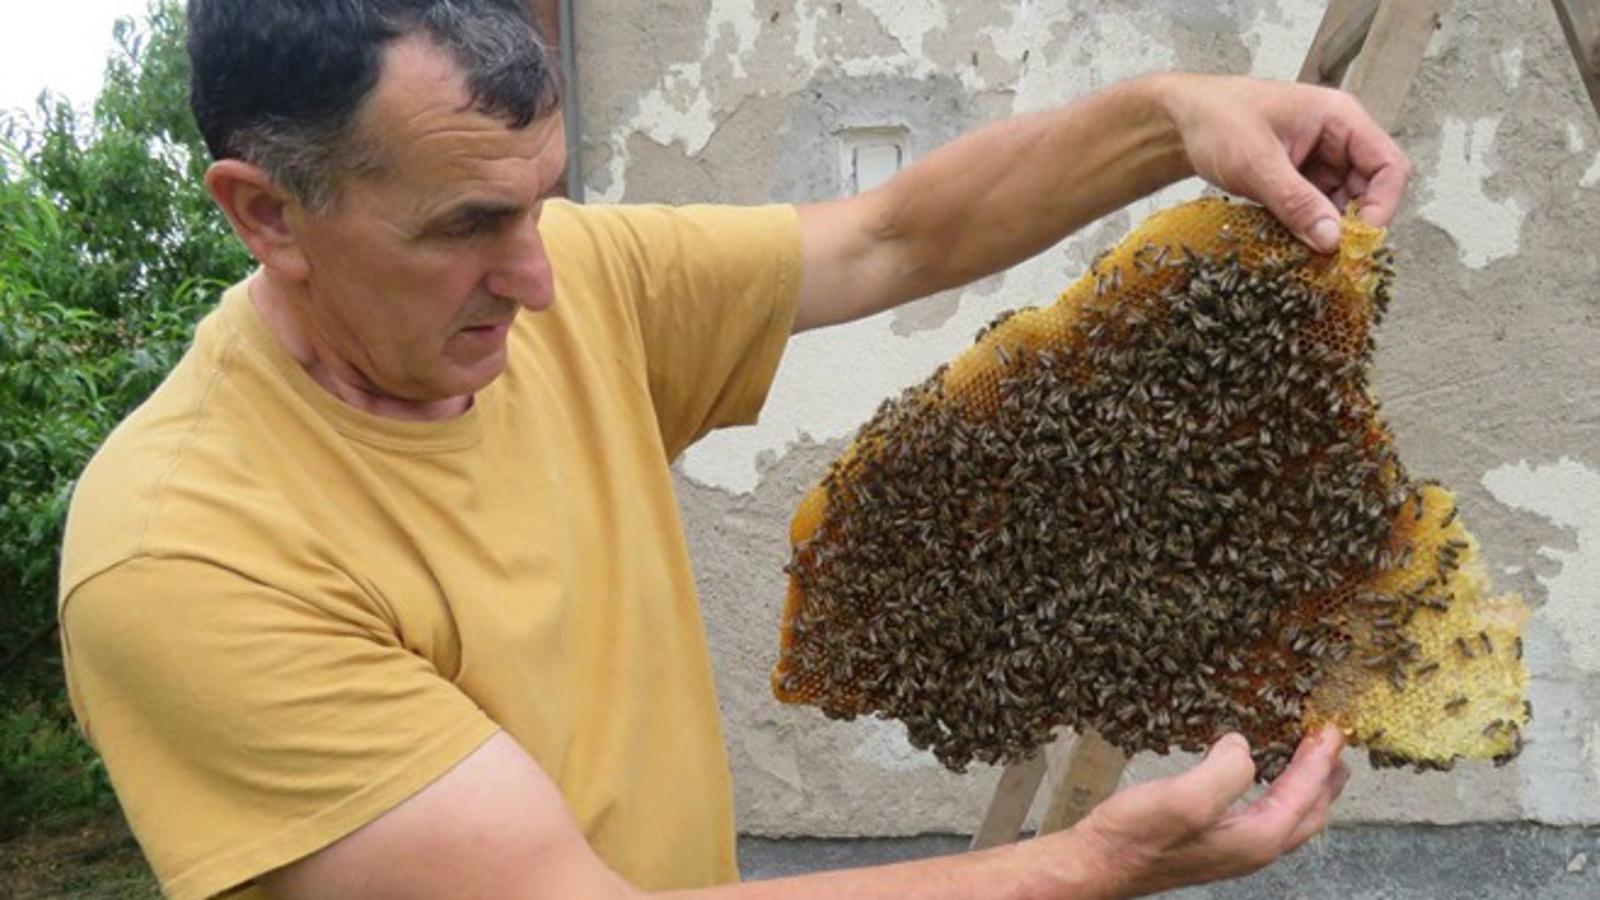 Pčelar Marko Stanić premjestio je pčele u kasičnu košnicu.